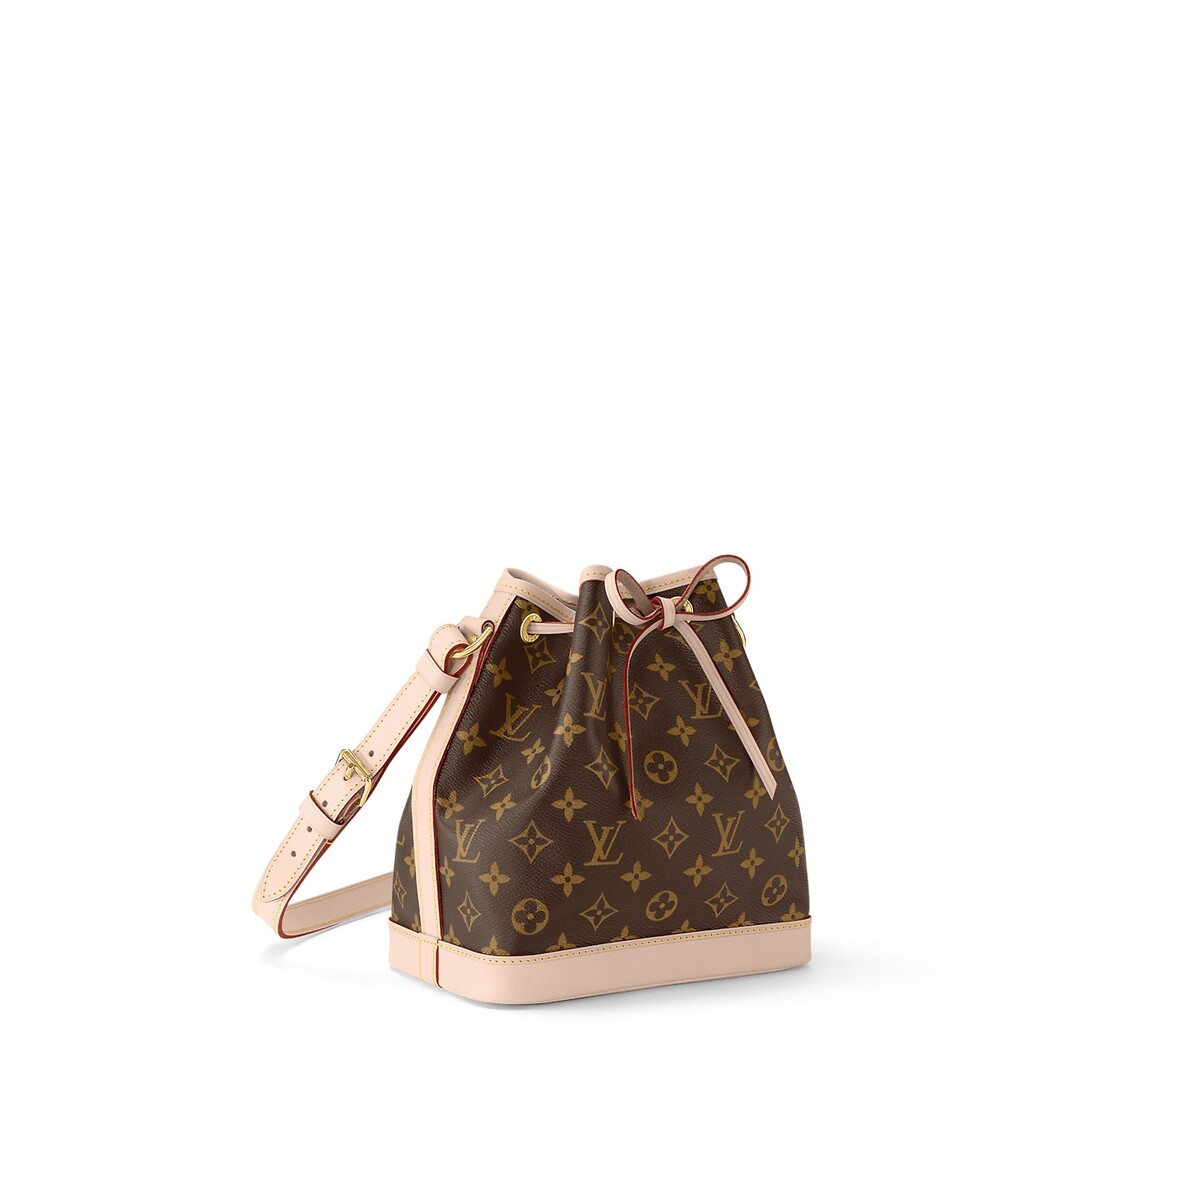 Takto vyzerá originálny model kabelky Louis Vuitton Noé BB s ikonickým monogramom módneho domu. Cena je 1 600 dolárov.